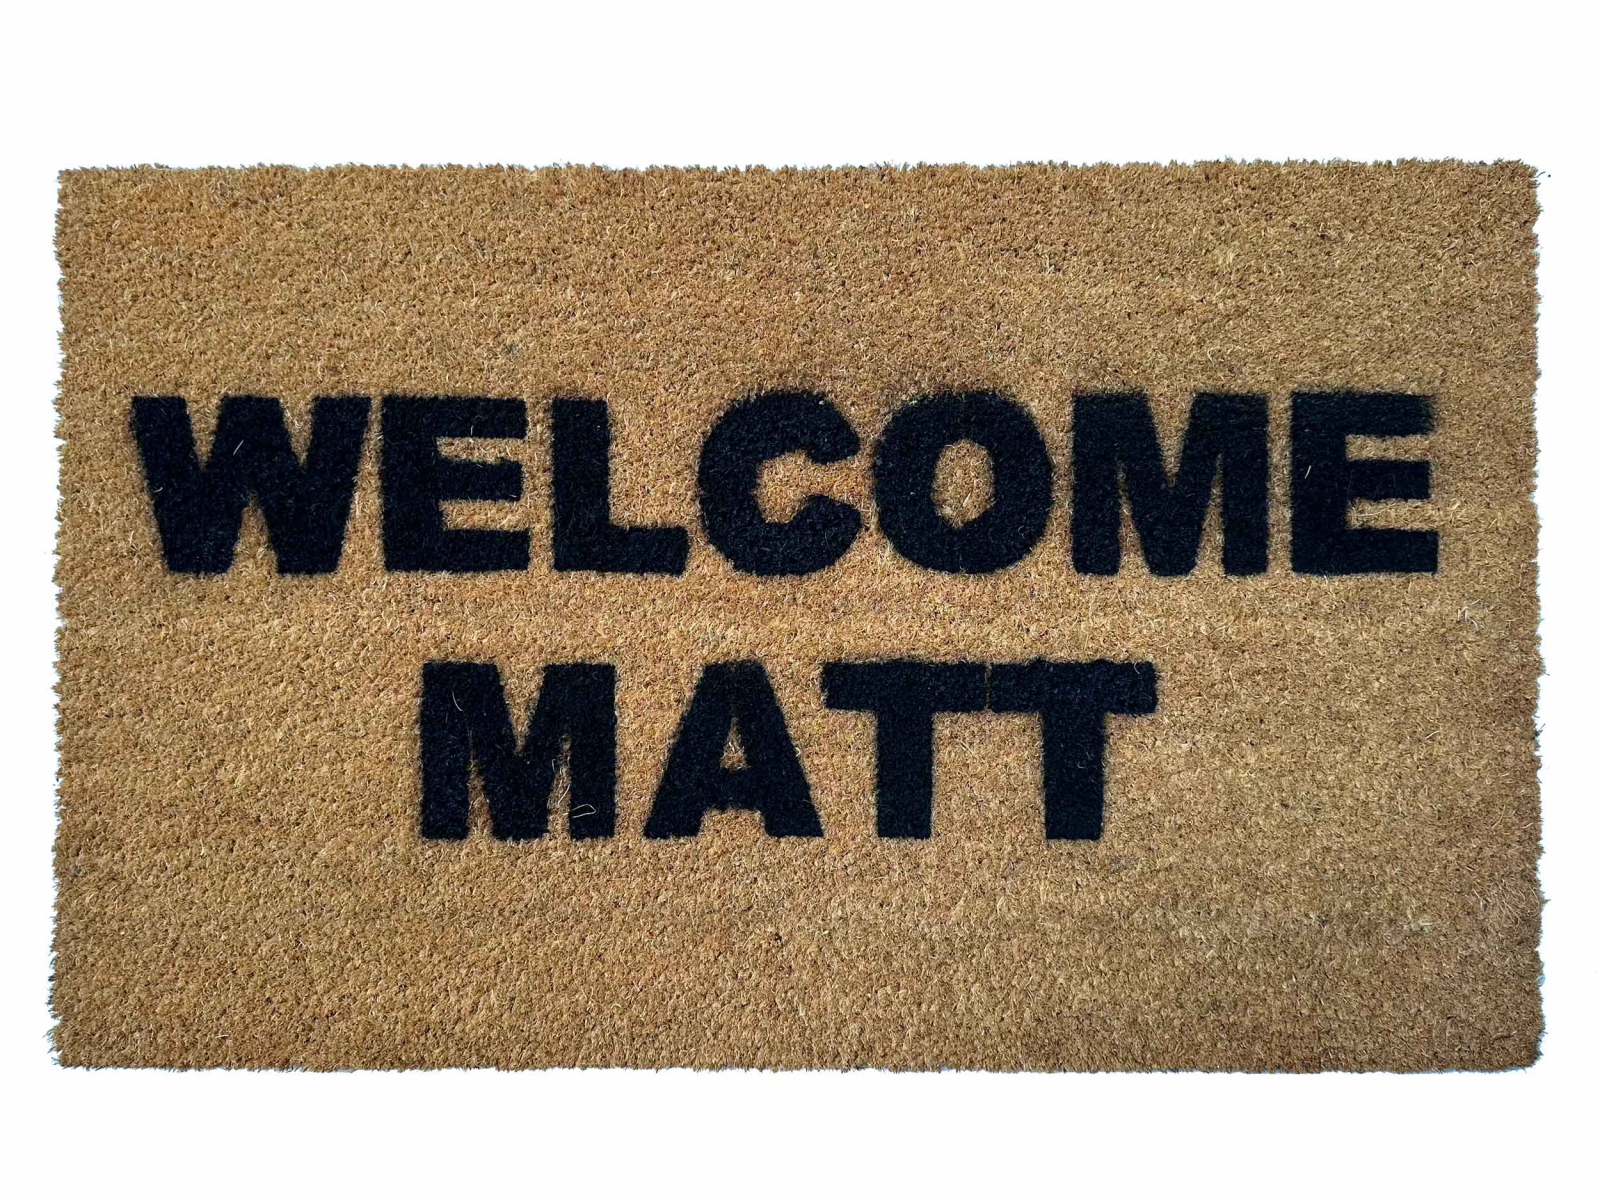 Un-Welcome go away doormats, funny rude welcome mats, Damn Good Doormats